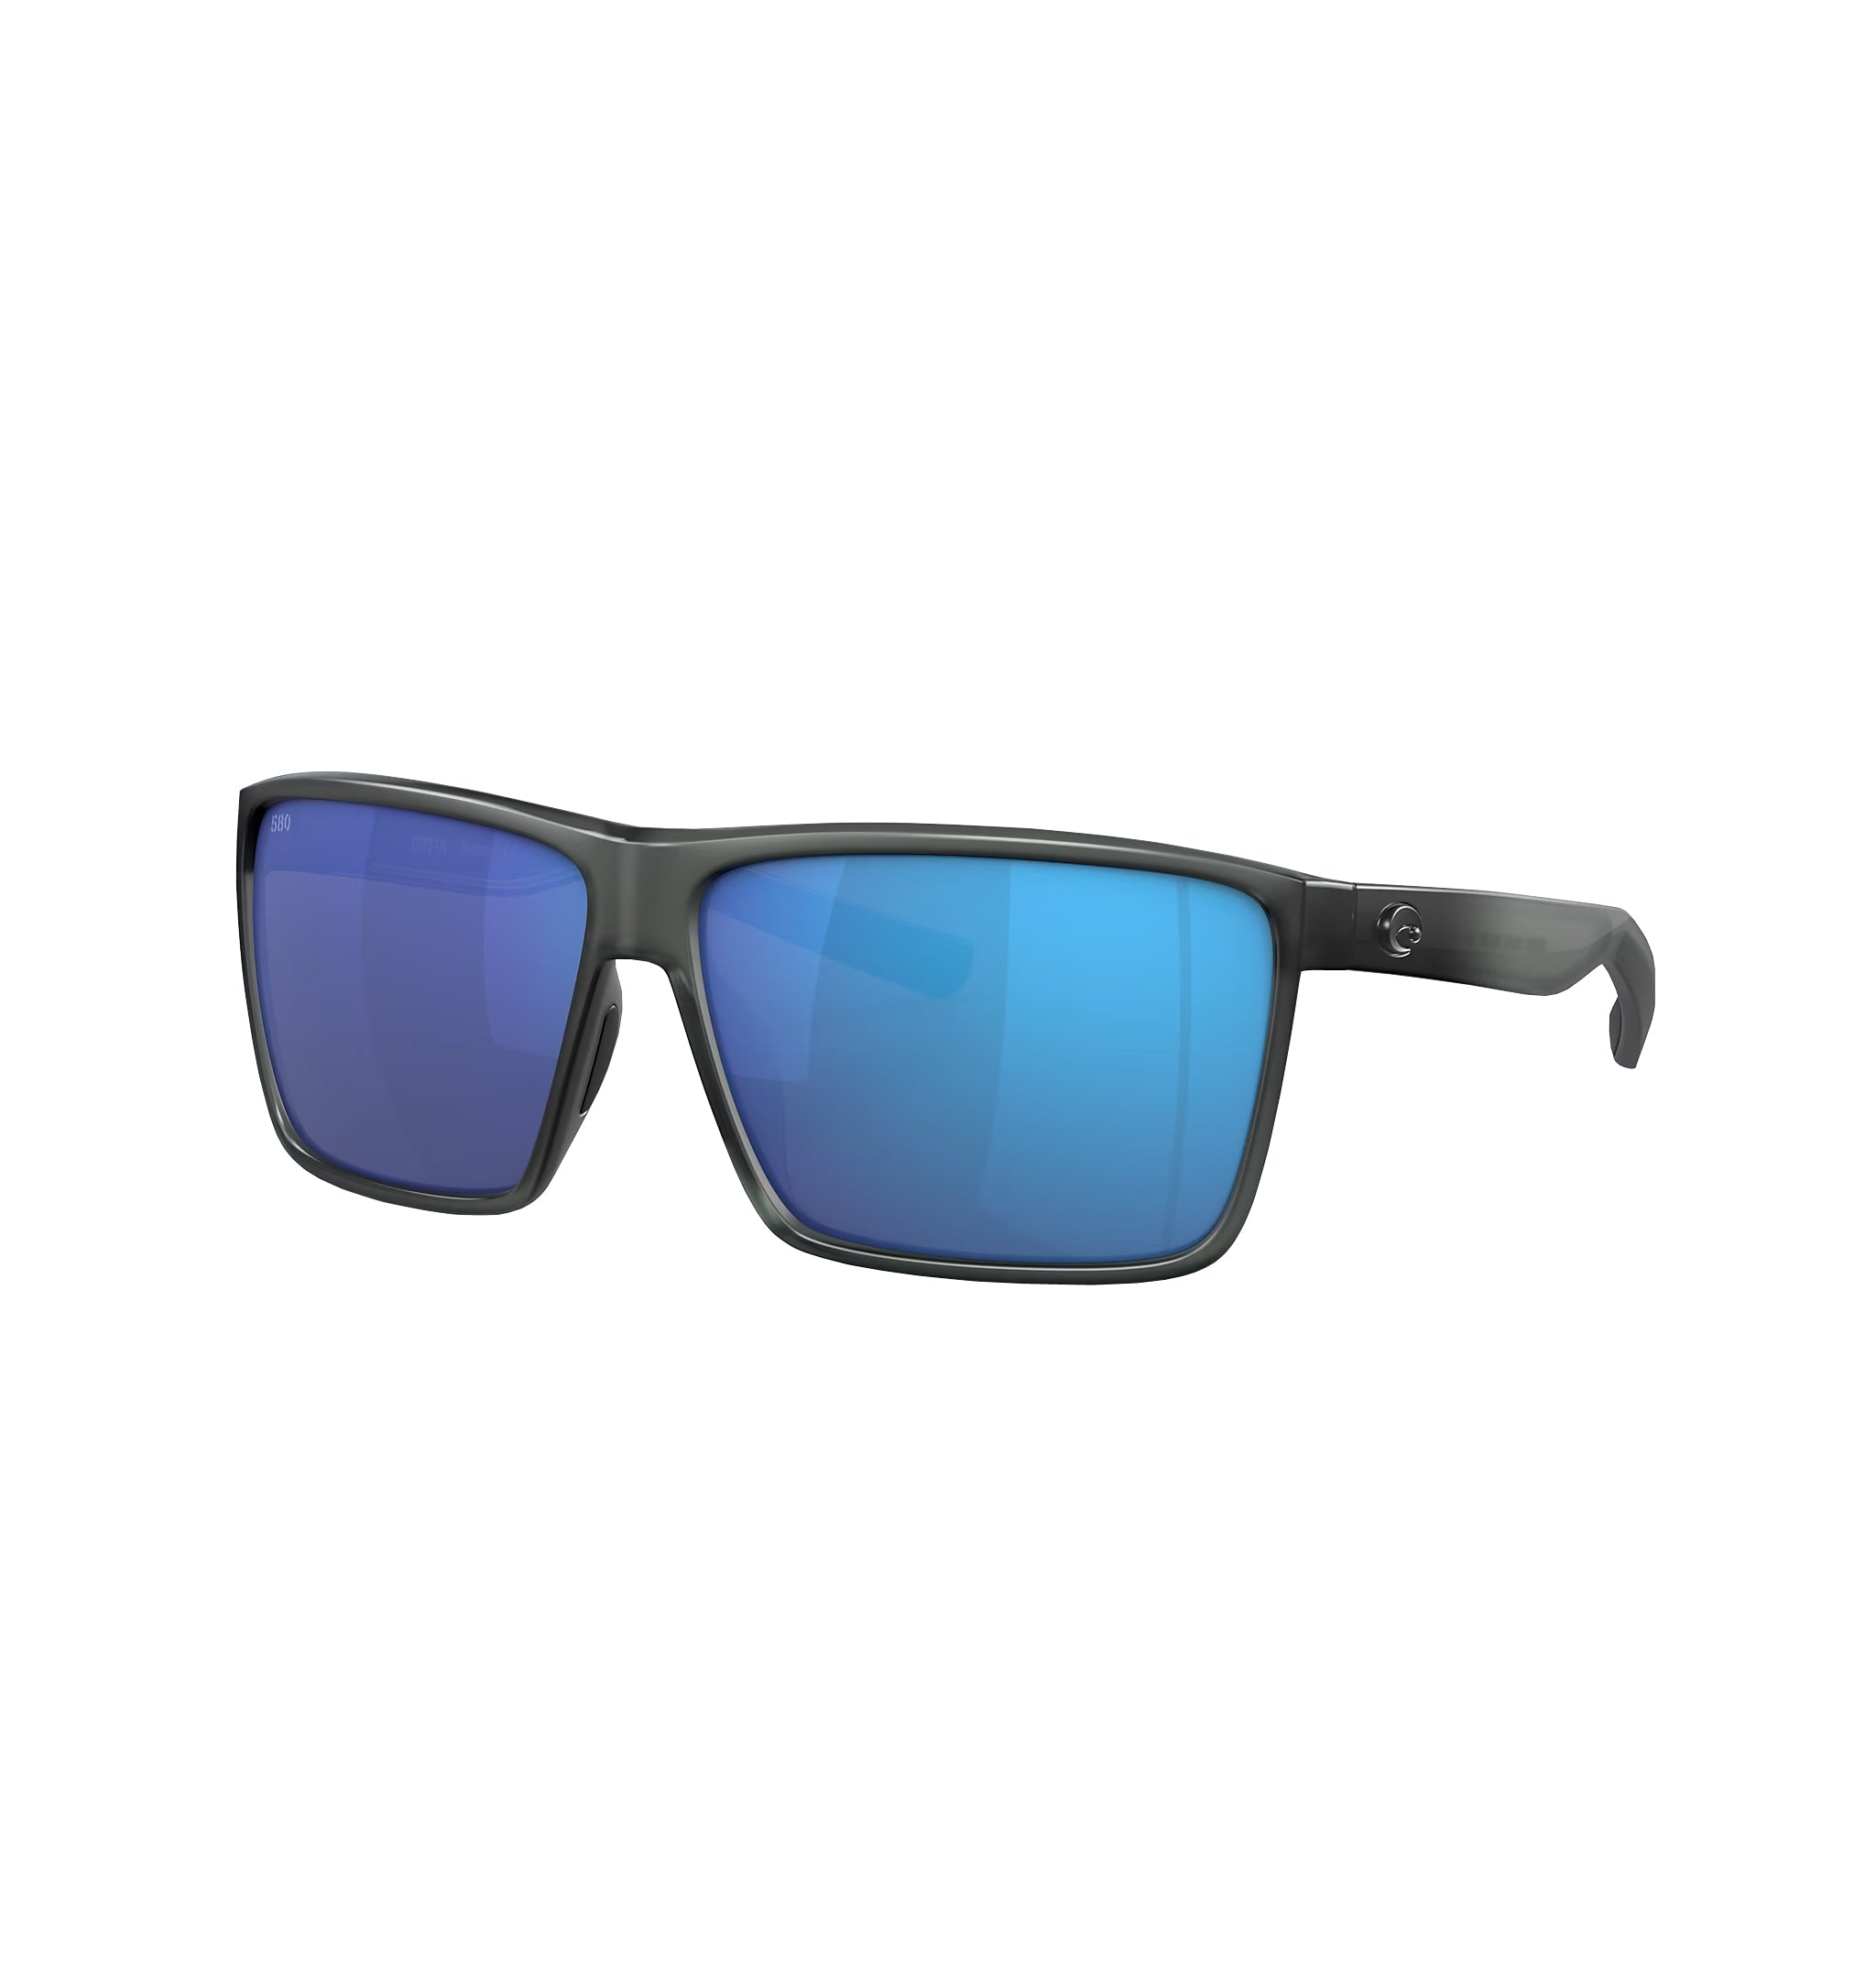 Costa Del Mar Rincondo Polarized Sunglasses MatteSmokeCrystal BlueMirror 580P